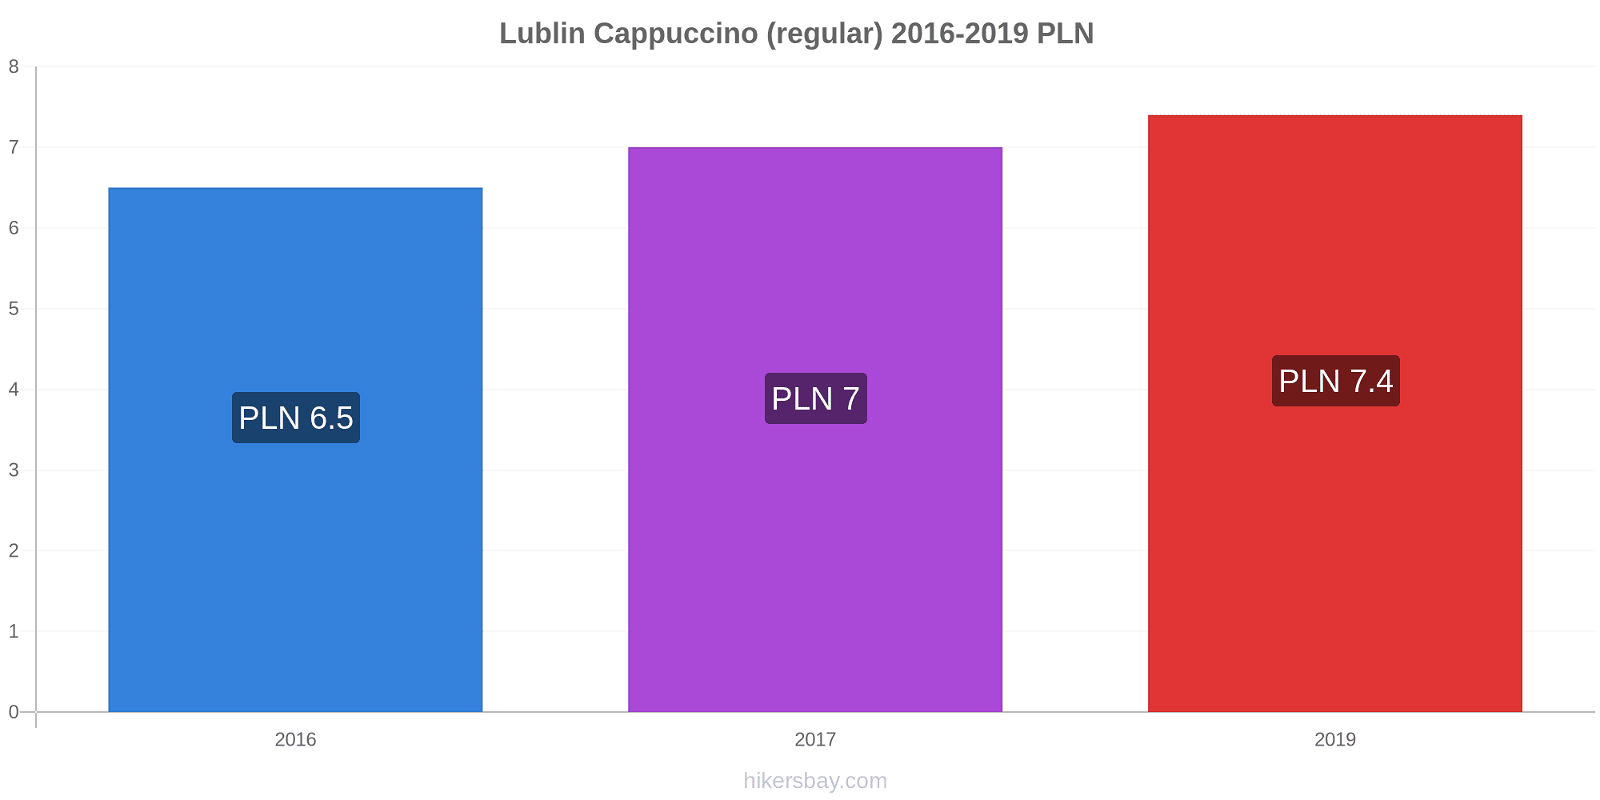 Lublin price changes Cappuccino (regular) hikersbay.com